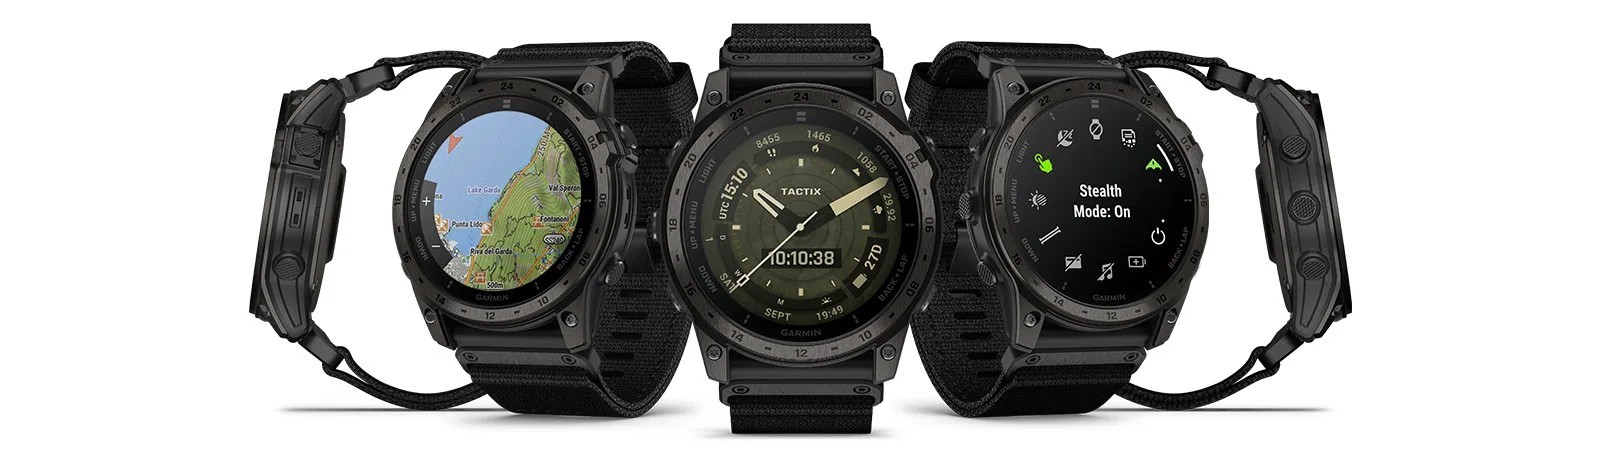 компания garmin представила смарт-часы tactix 7 amoled edition